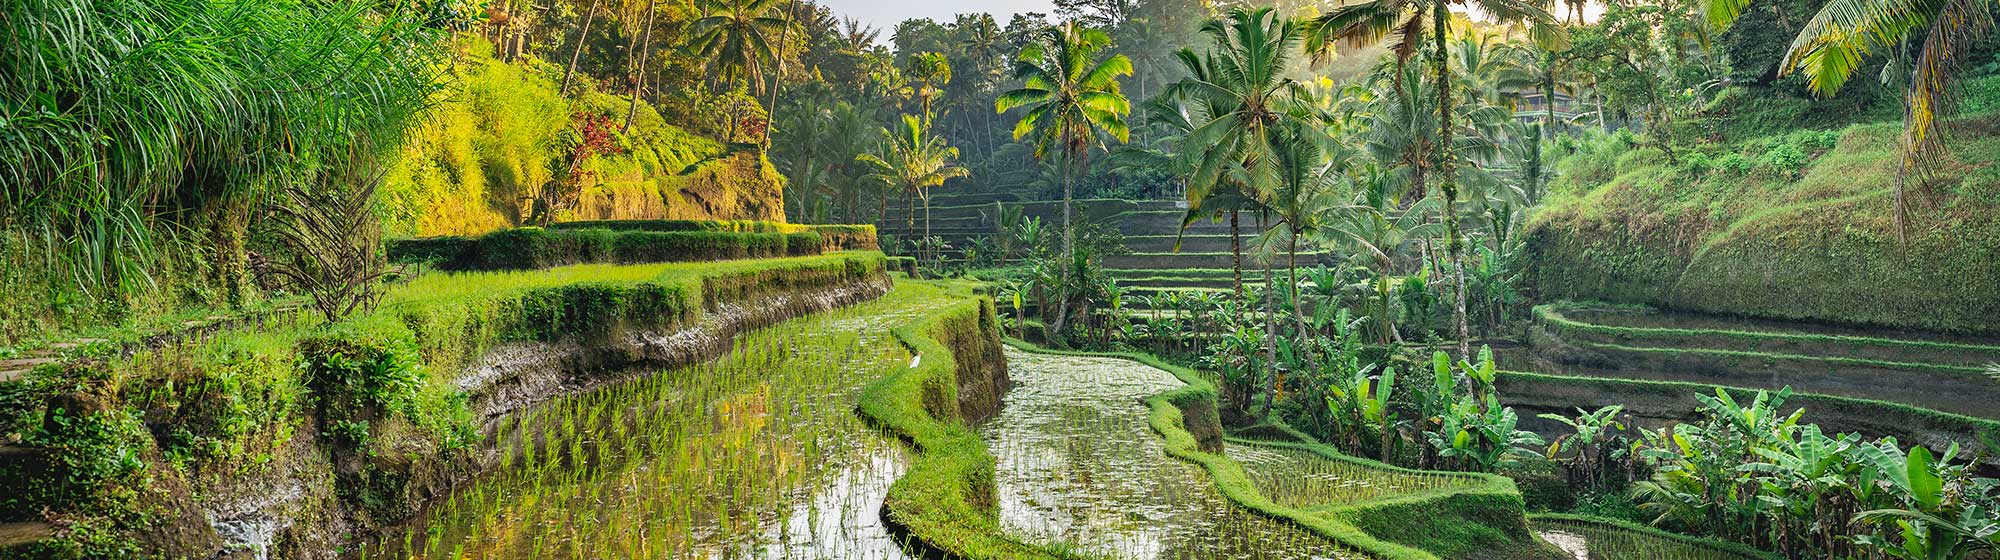 Des panoramas avec des champs de riz et des palmiers verdoyants